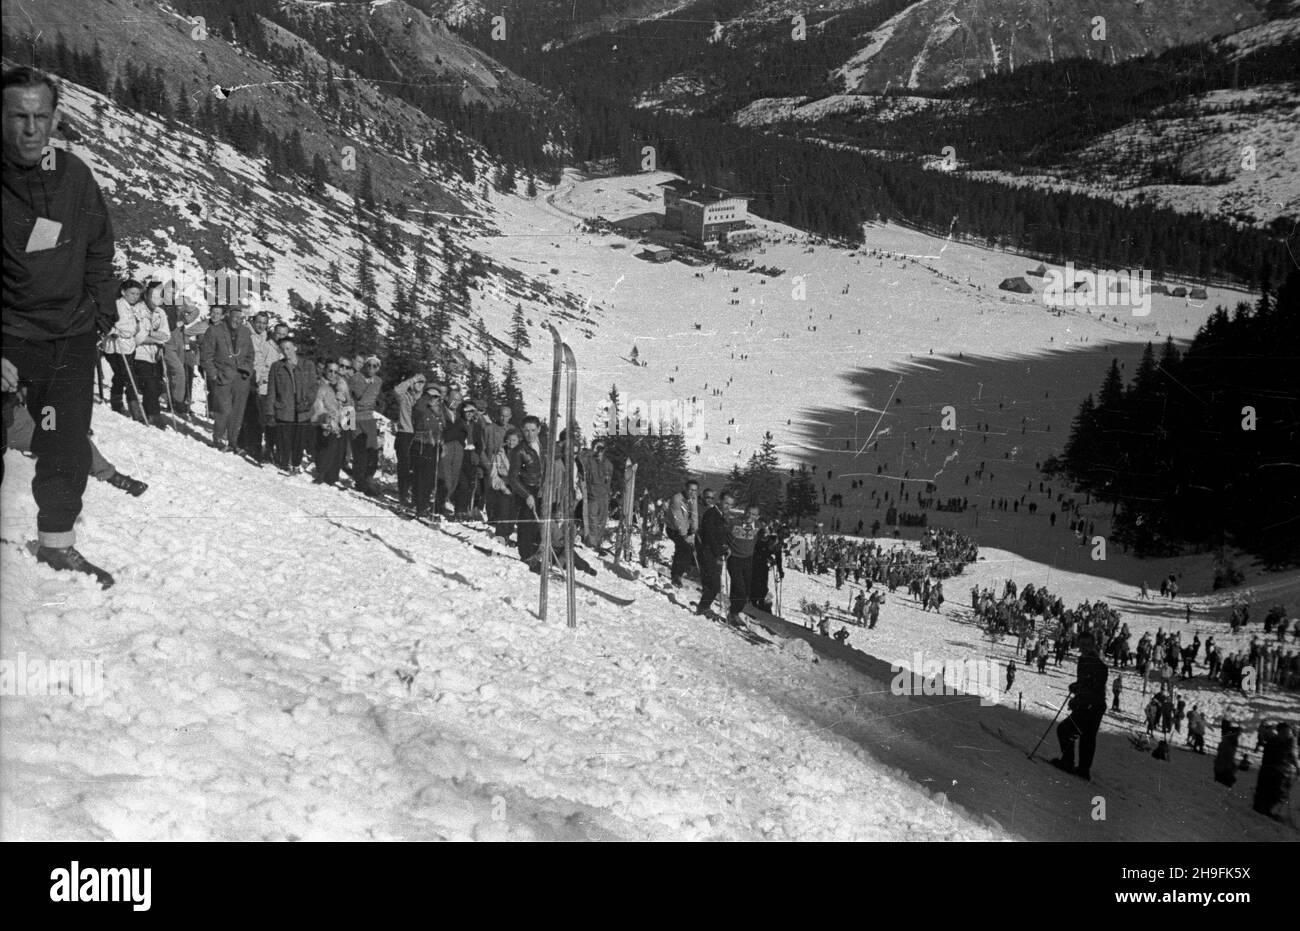 Karpacz, 1948-02-21. W dniach 19-23 lutego odbywa³y siê XXIII Mistrzostwa Narciarskie Polski. Slalom mê¿czyzn wygra³ Józef Marusarz (SNPTT Zakopane). Nz. widzowie na trasie slalomu mê¿czyzn. pw  PAP      Karpacz, Feb. 21, 1948. The 23rd Poland's Skiing Championship was held on February 19-23. Jozef Marusarz (SNPTT Zakopane) won men's slalom. Pictured: men's slalom fans.  pw  PAP Stock Photo